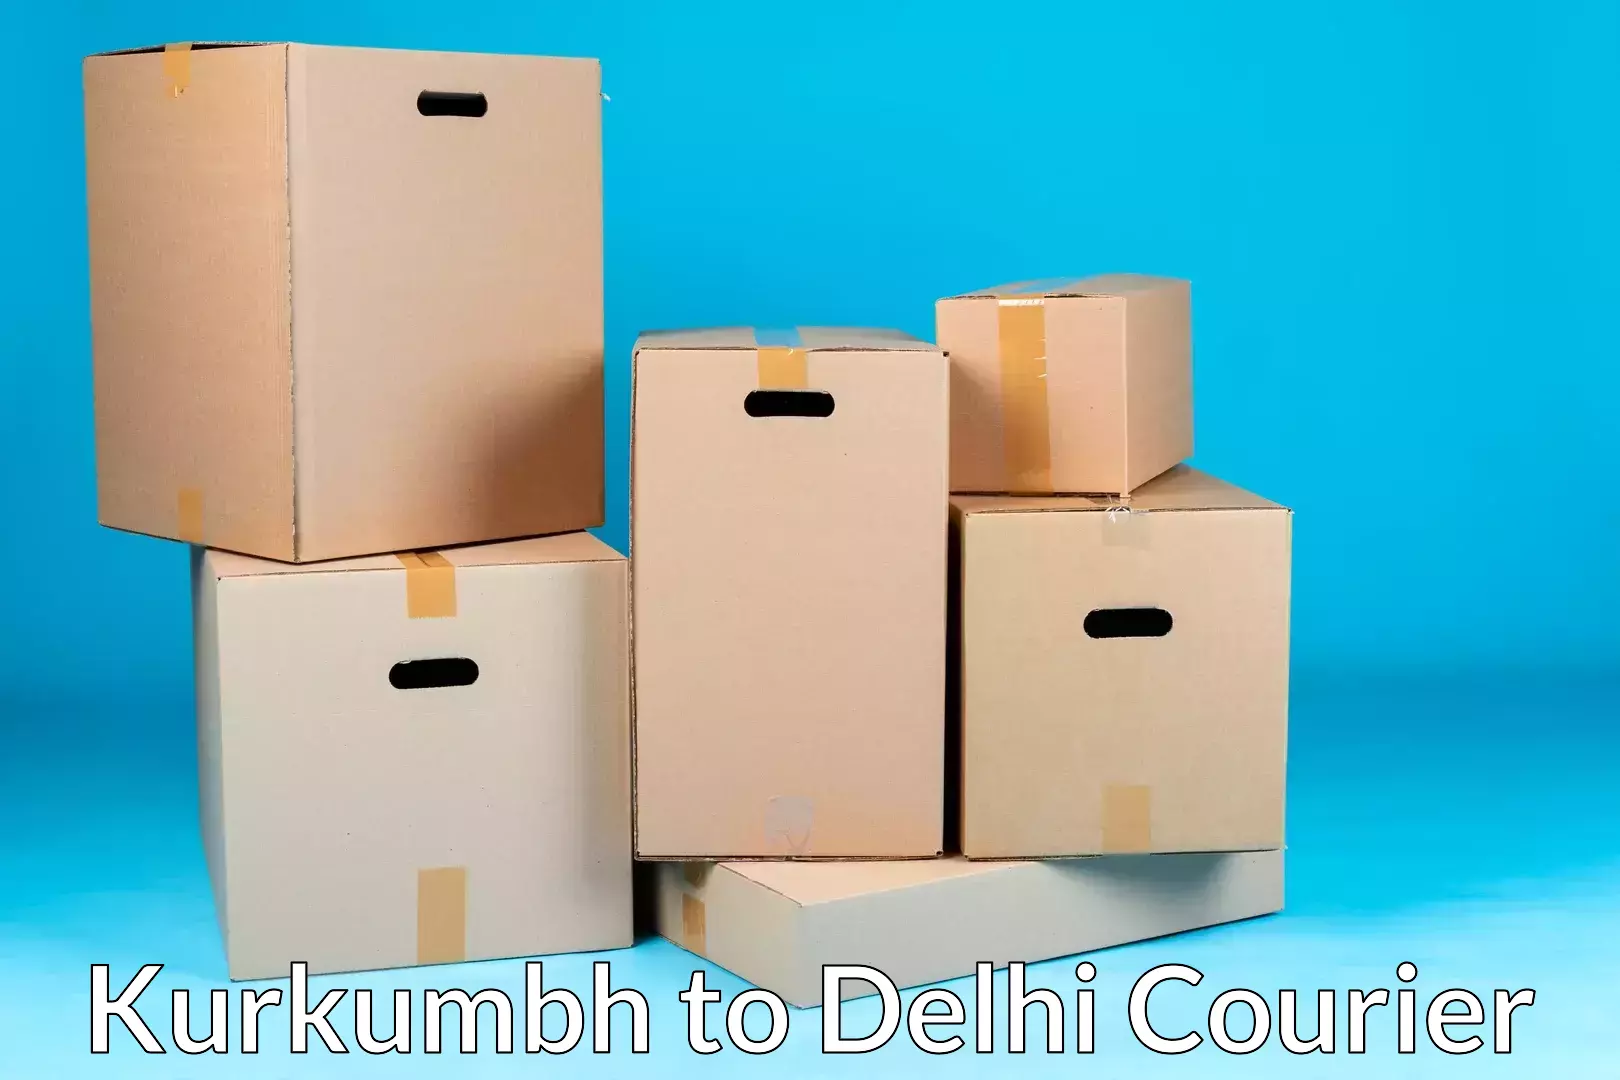 Moving and handling services Kurkumbh to Ramesh Nagar